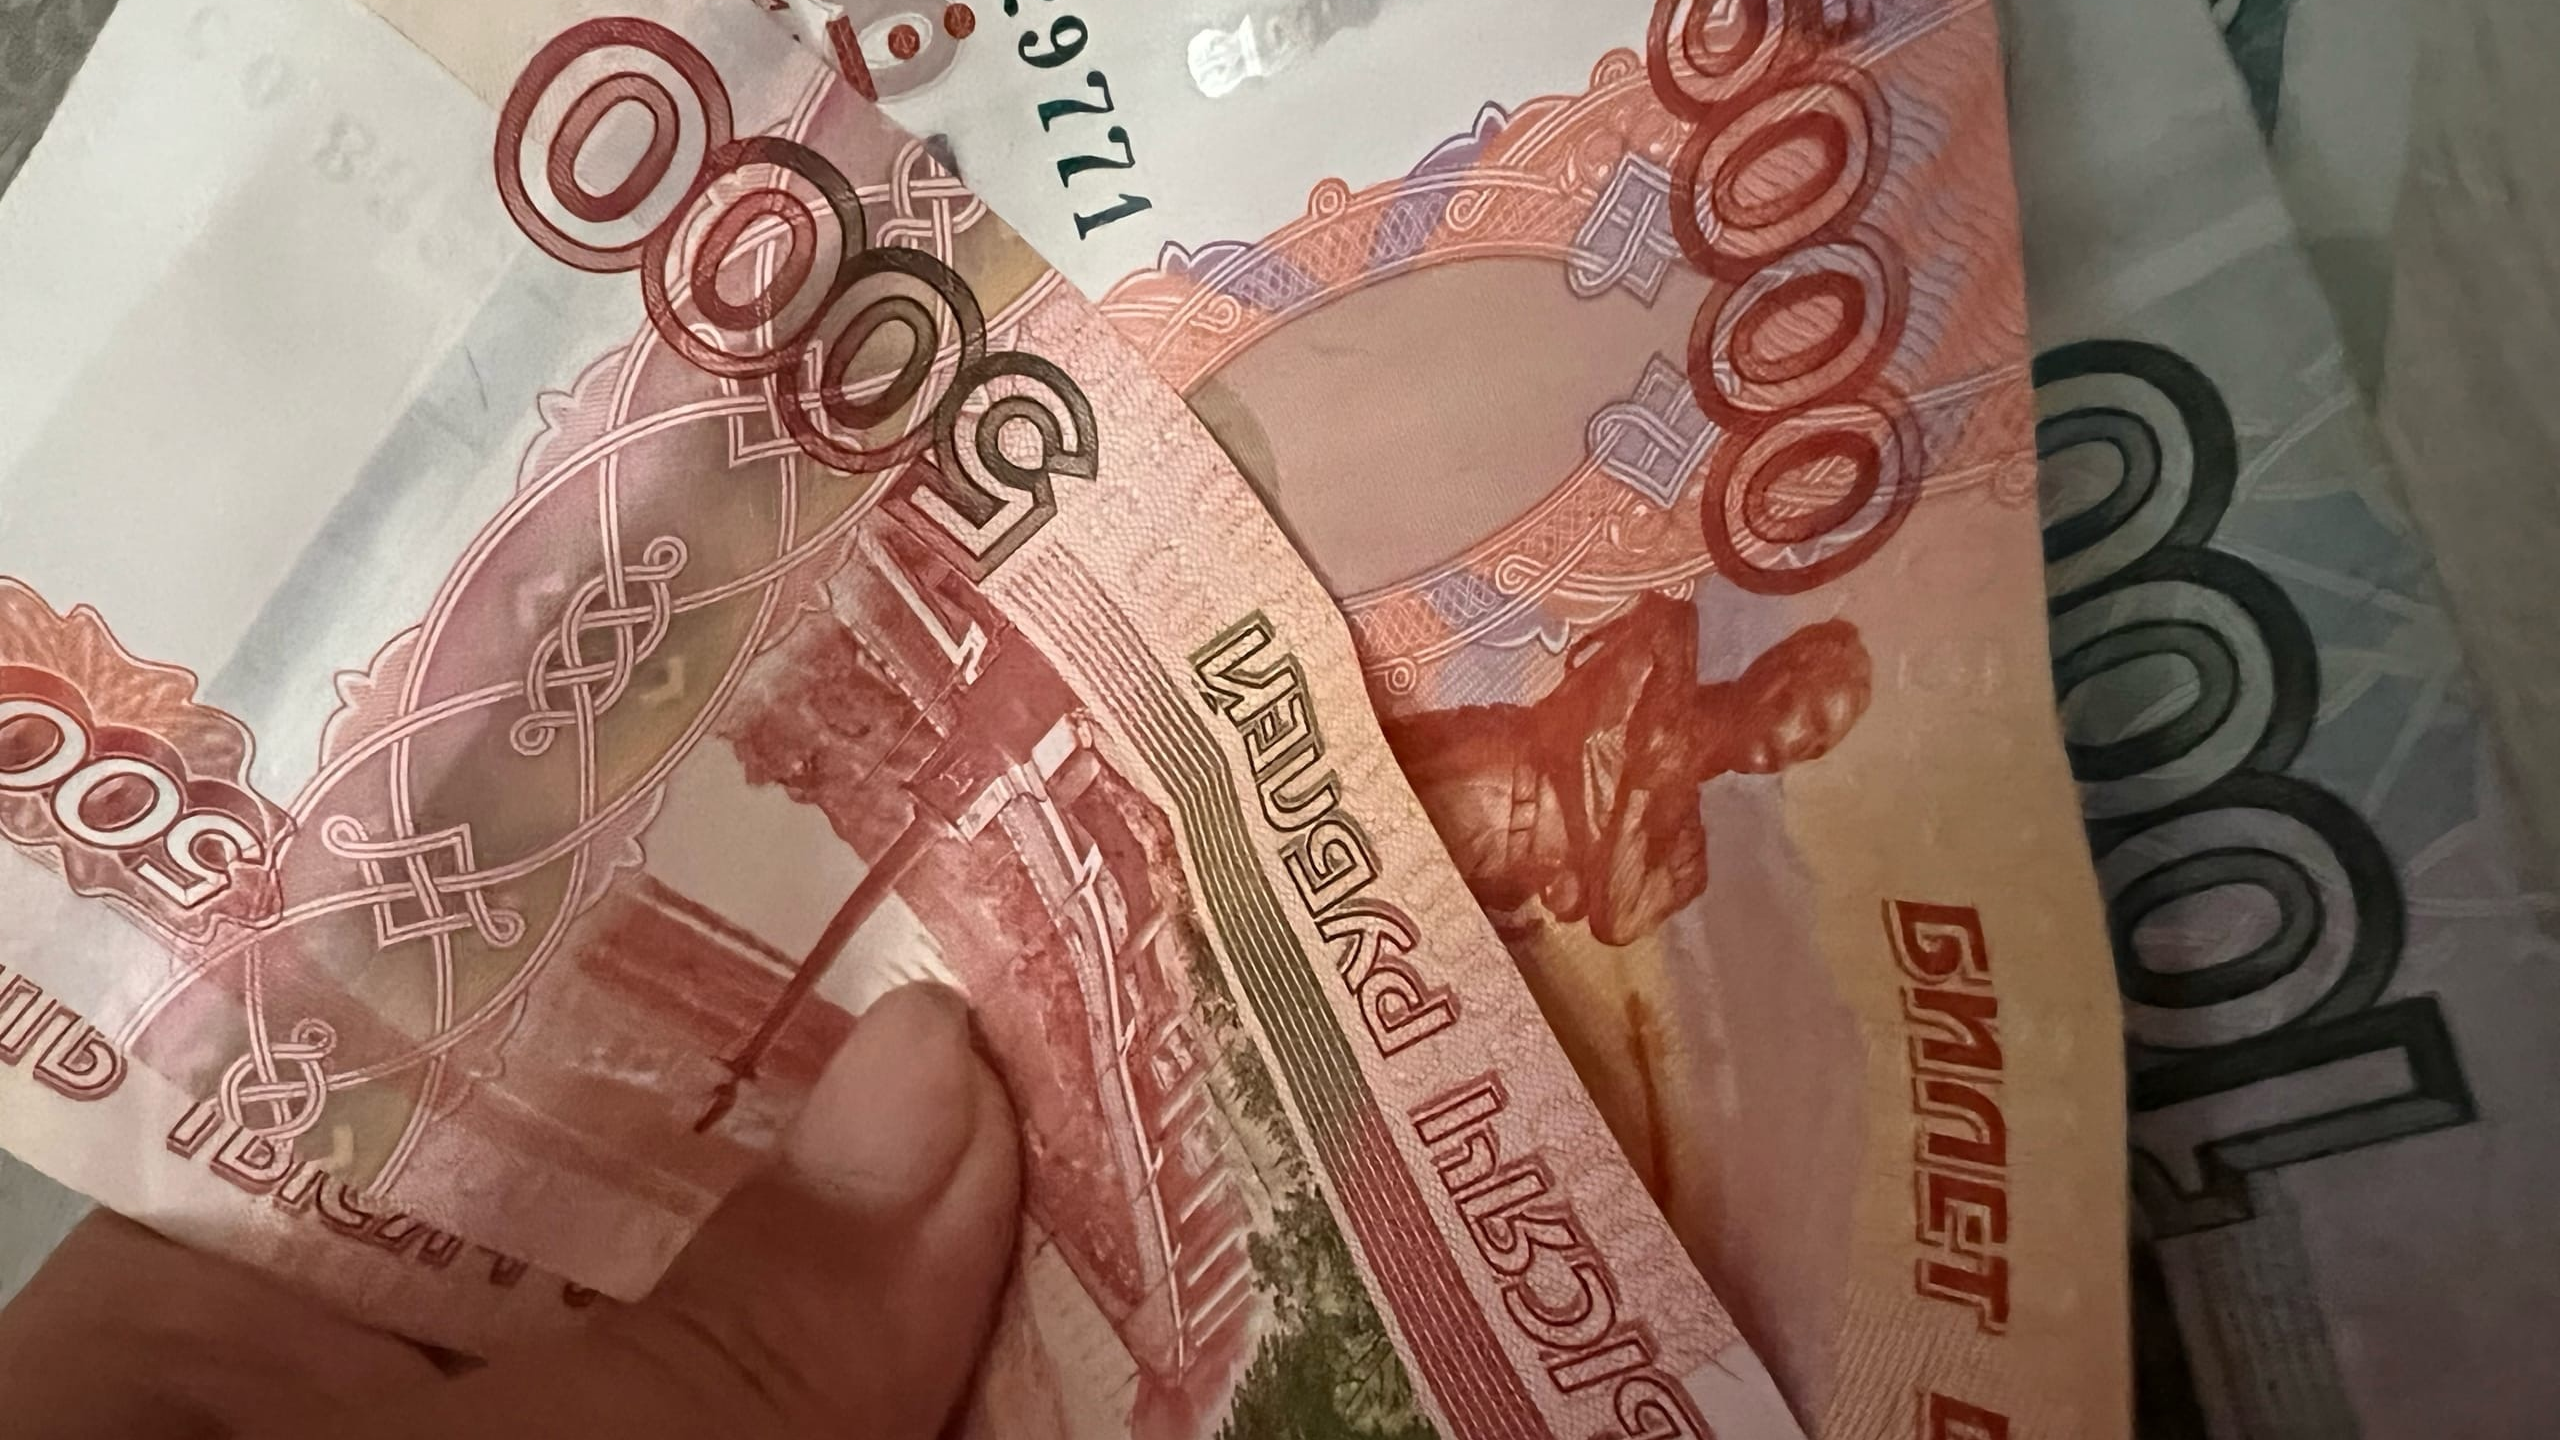 В Ульяновской области мужчина пришел в гости и украл 90 тысяч рублей у своей знакомой